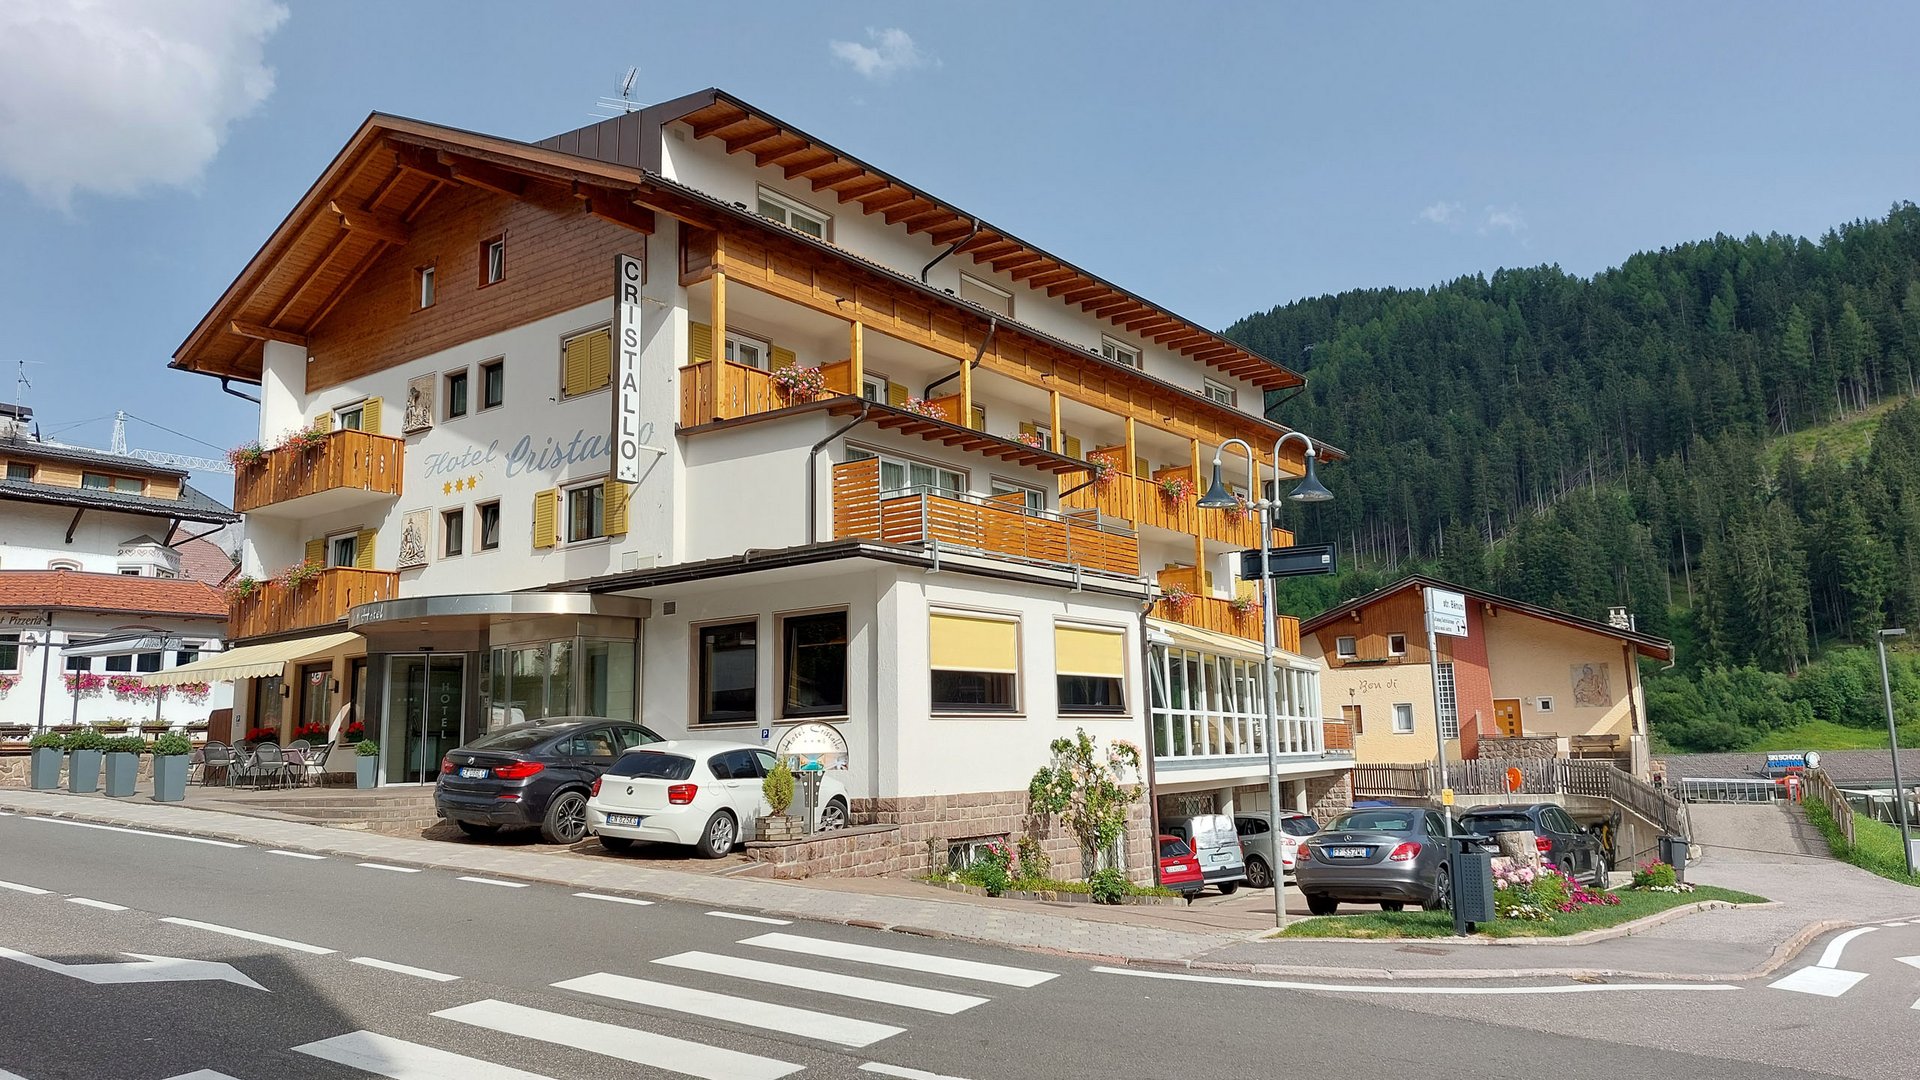 Il tuo albergo a Santa Cristina in Val Gardena: welcome!